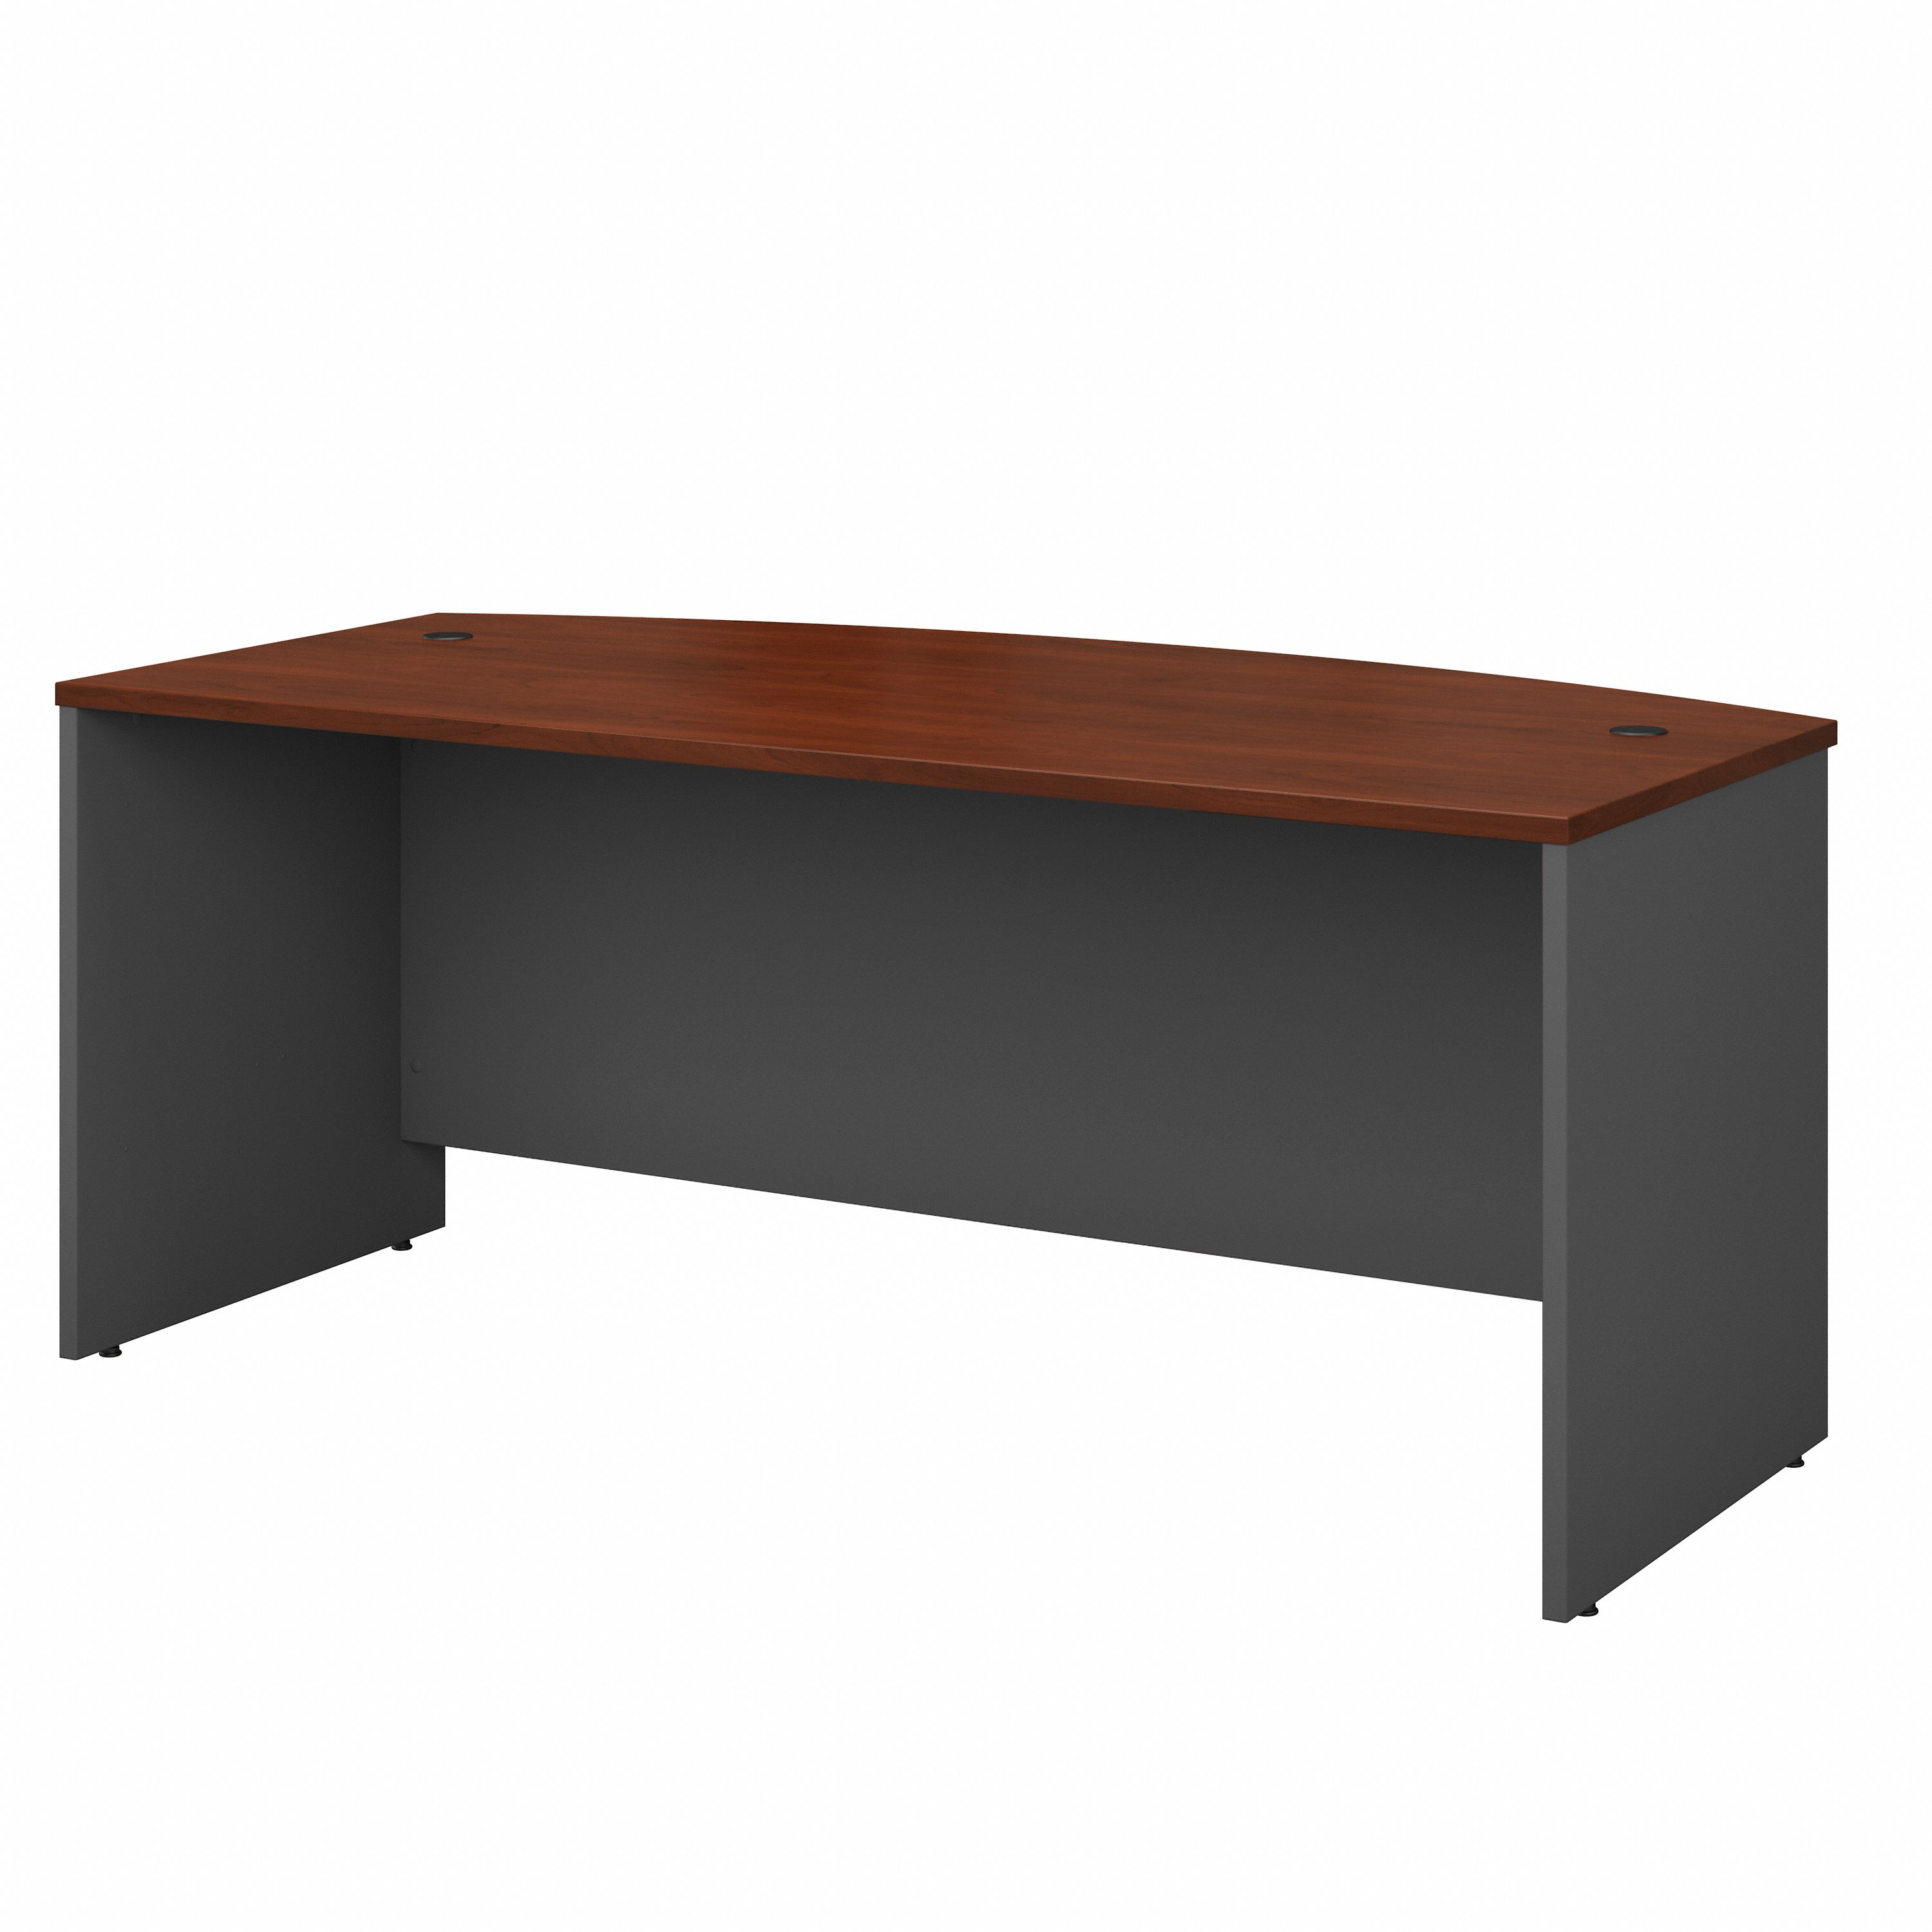 Shop Bush Business Furniture Series C 72W x 36D Bow Front Desk 02 WC24446 #color_hansen cherry/graphite gray